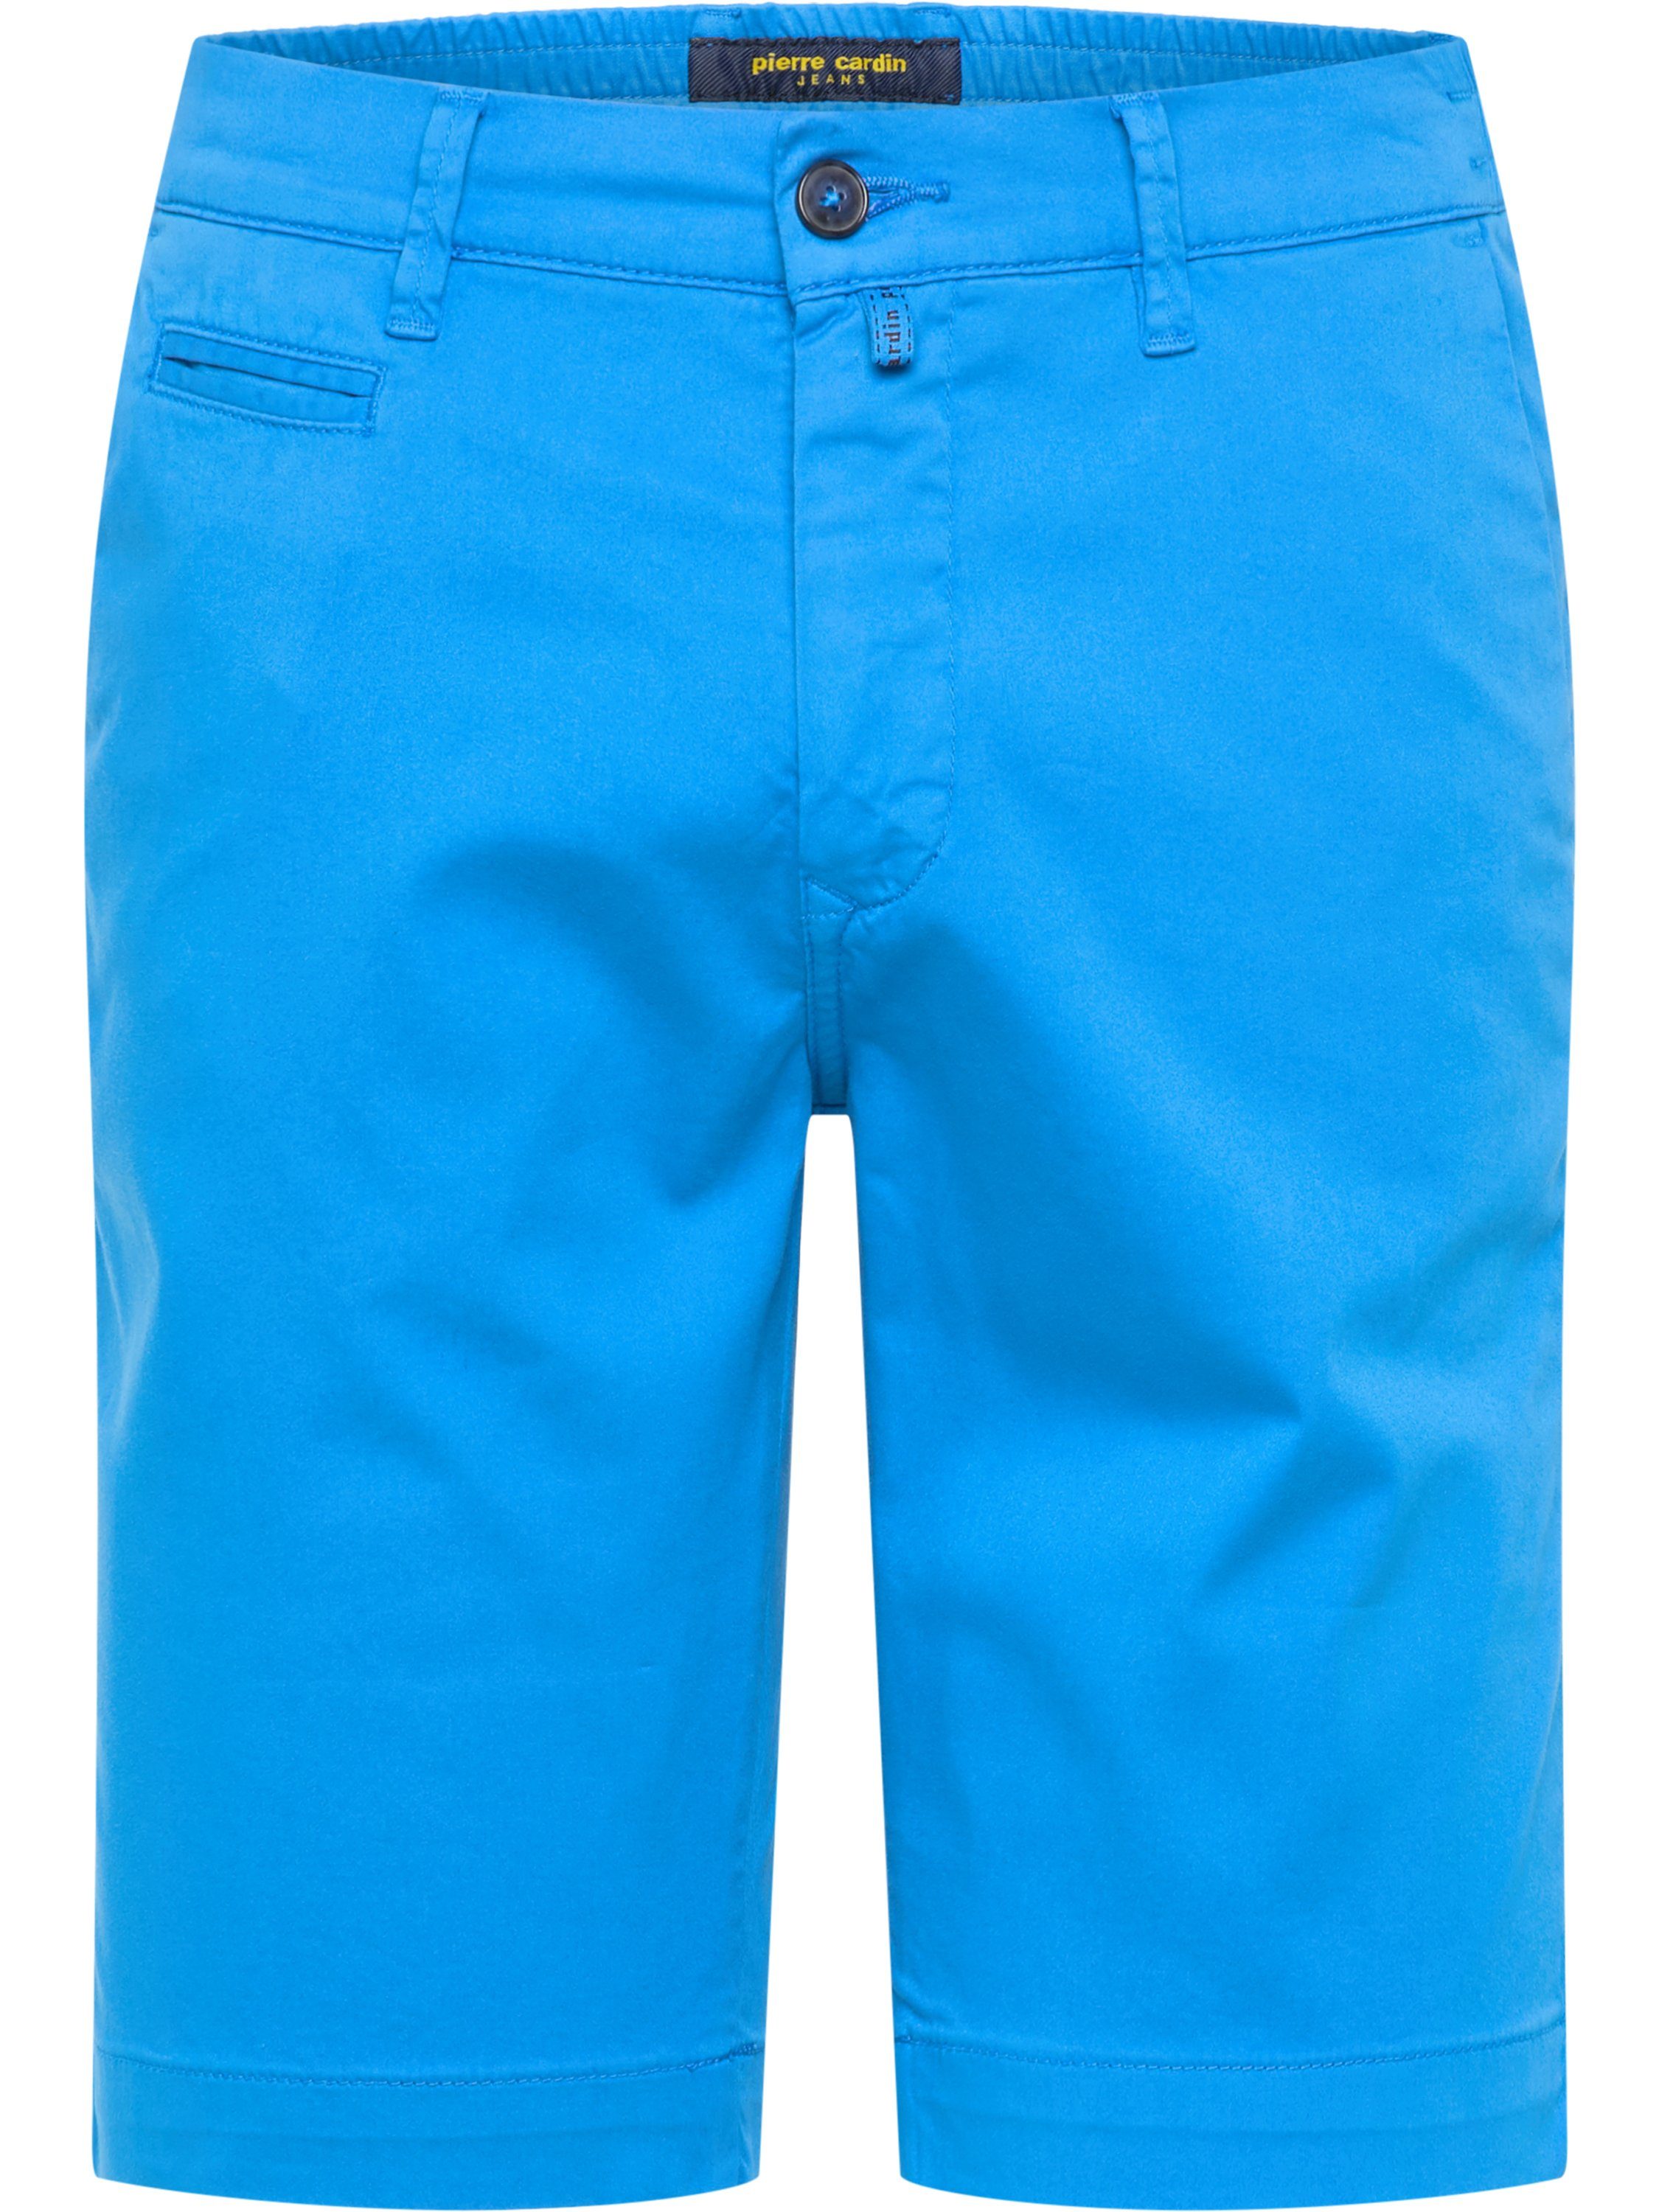 Pierre Cardin 5-Pocket-Jeans PIERRE CARDIN LYON AIRTOUCH BERMUDA bright blue 3477 2080.64